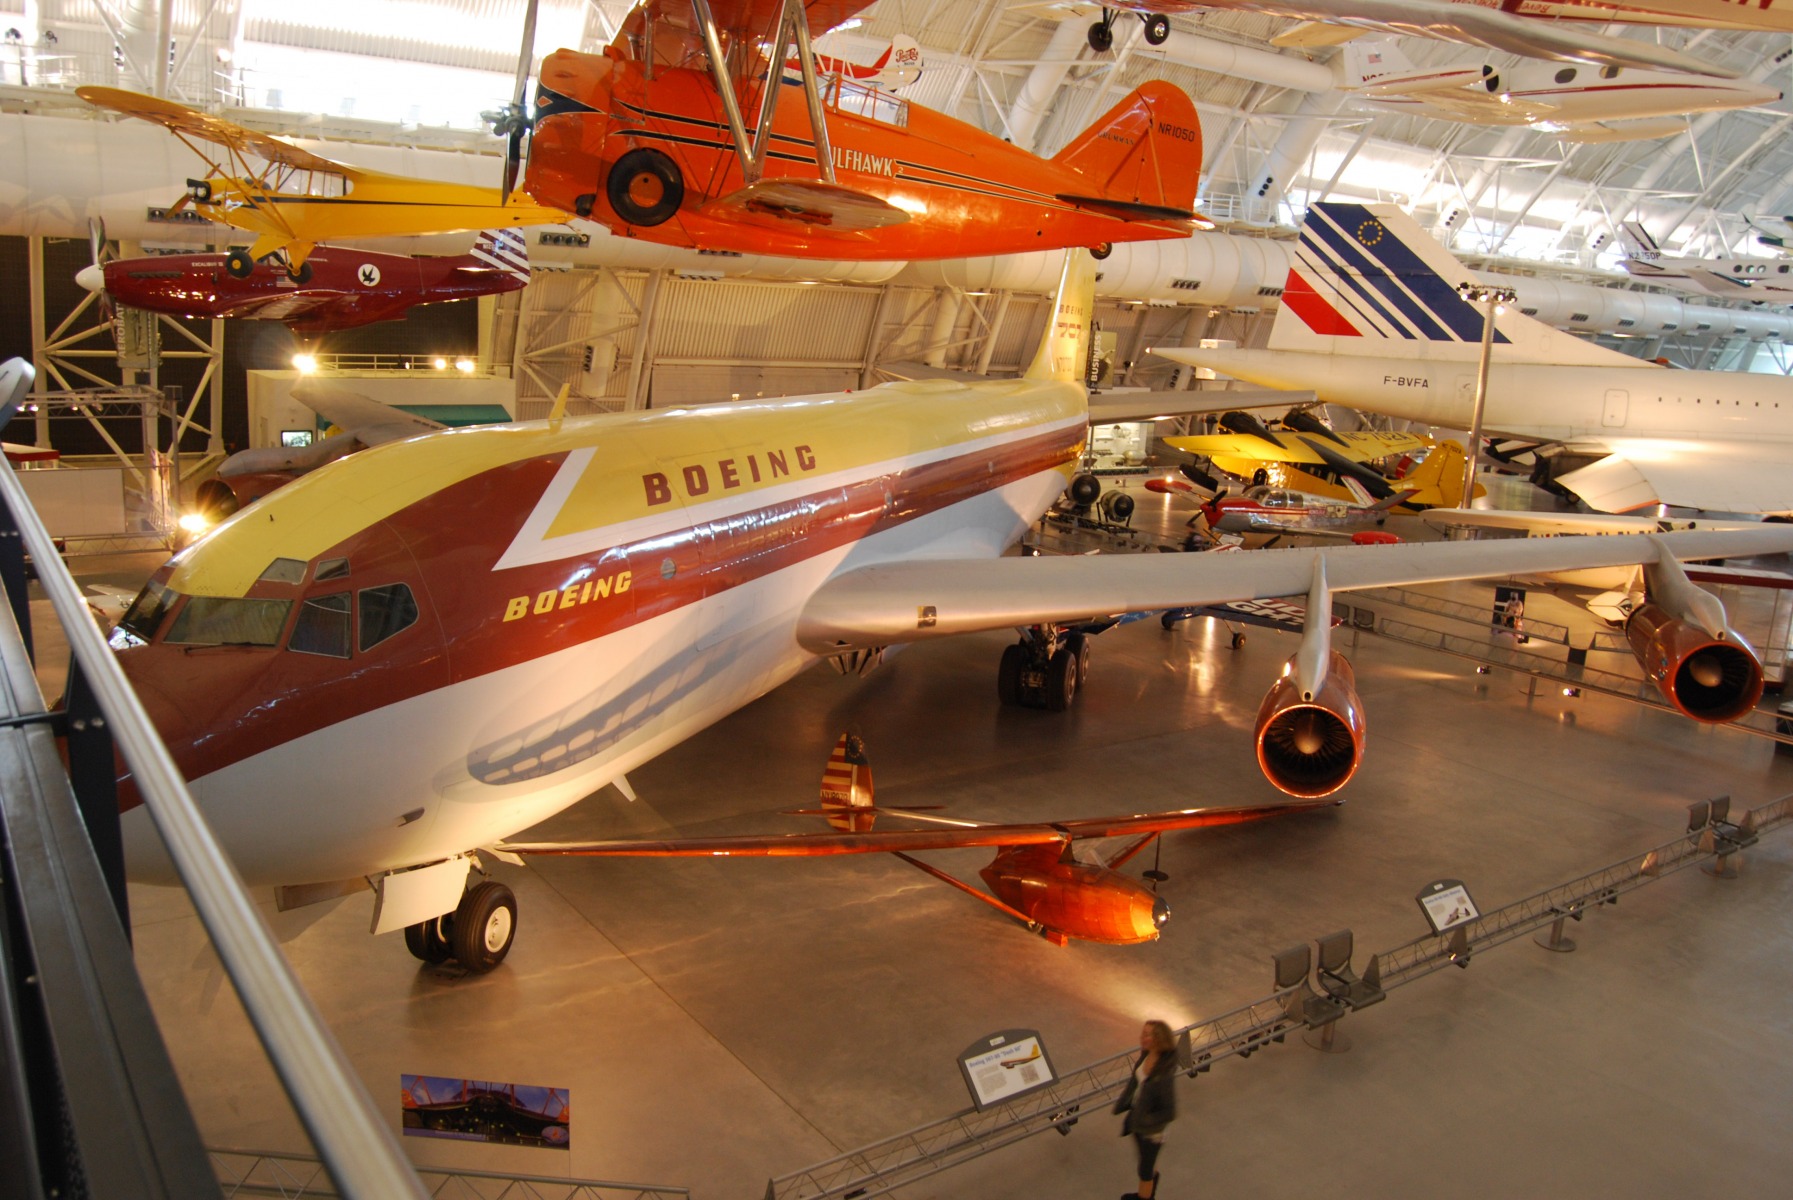 Udvar-Hazy Aviation Museum